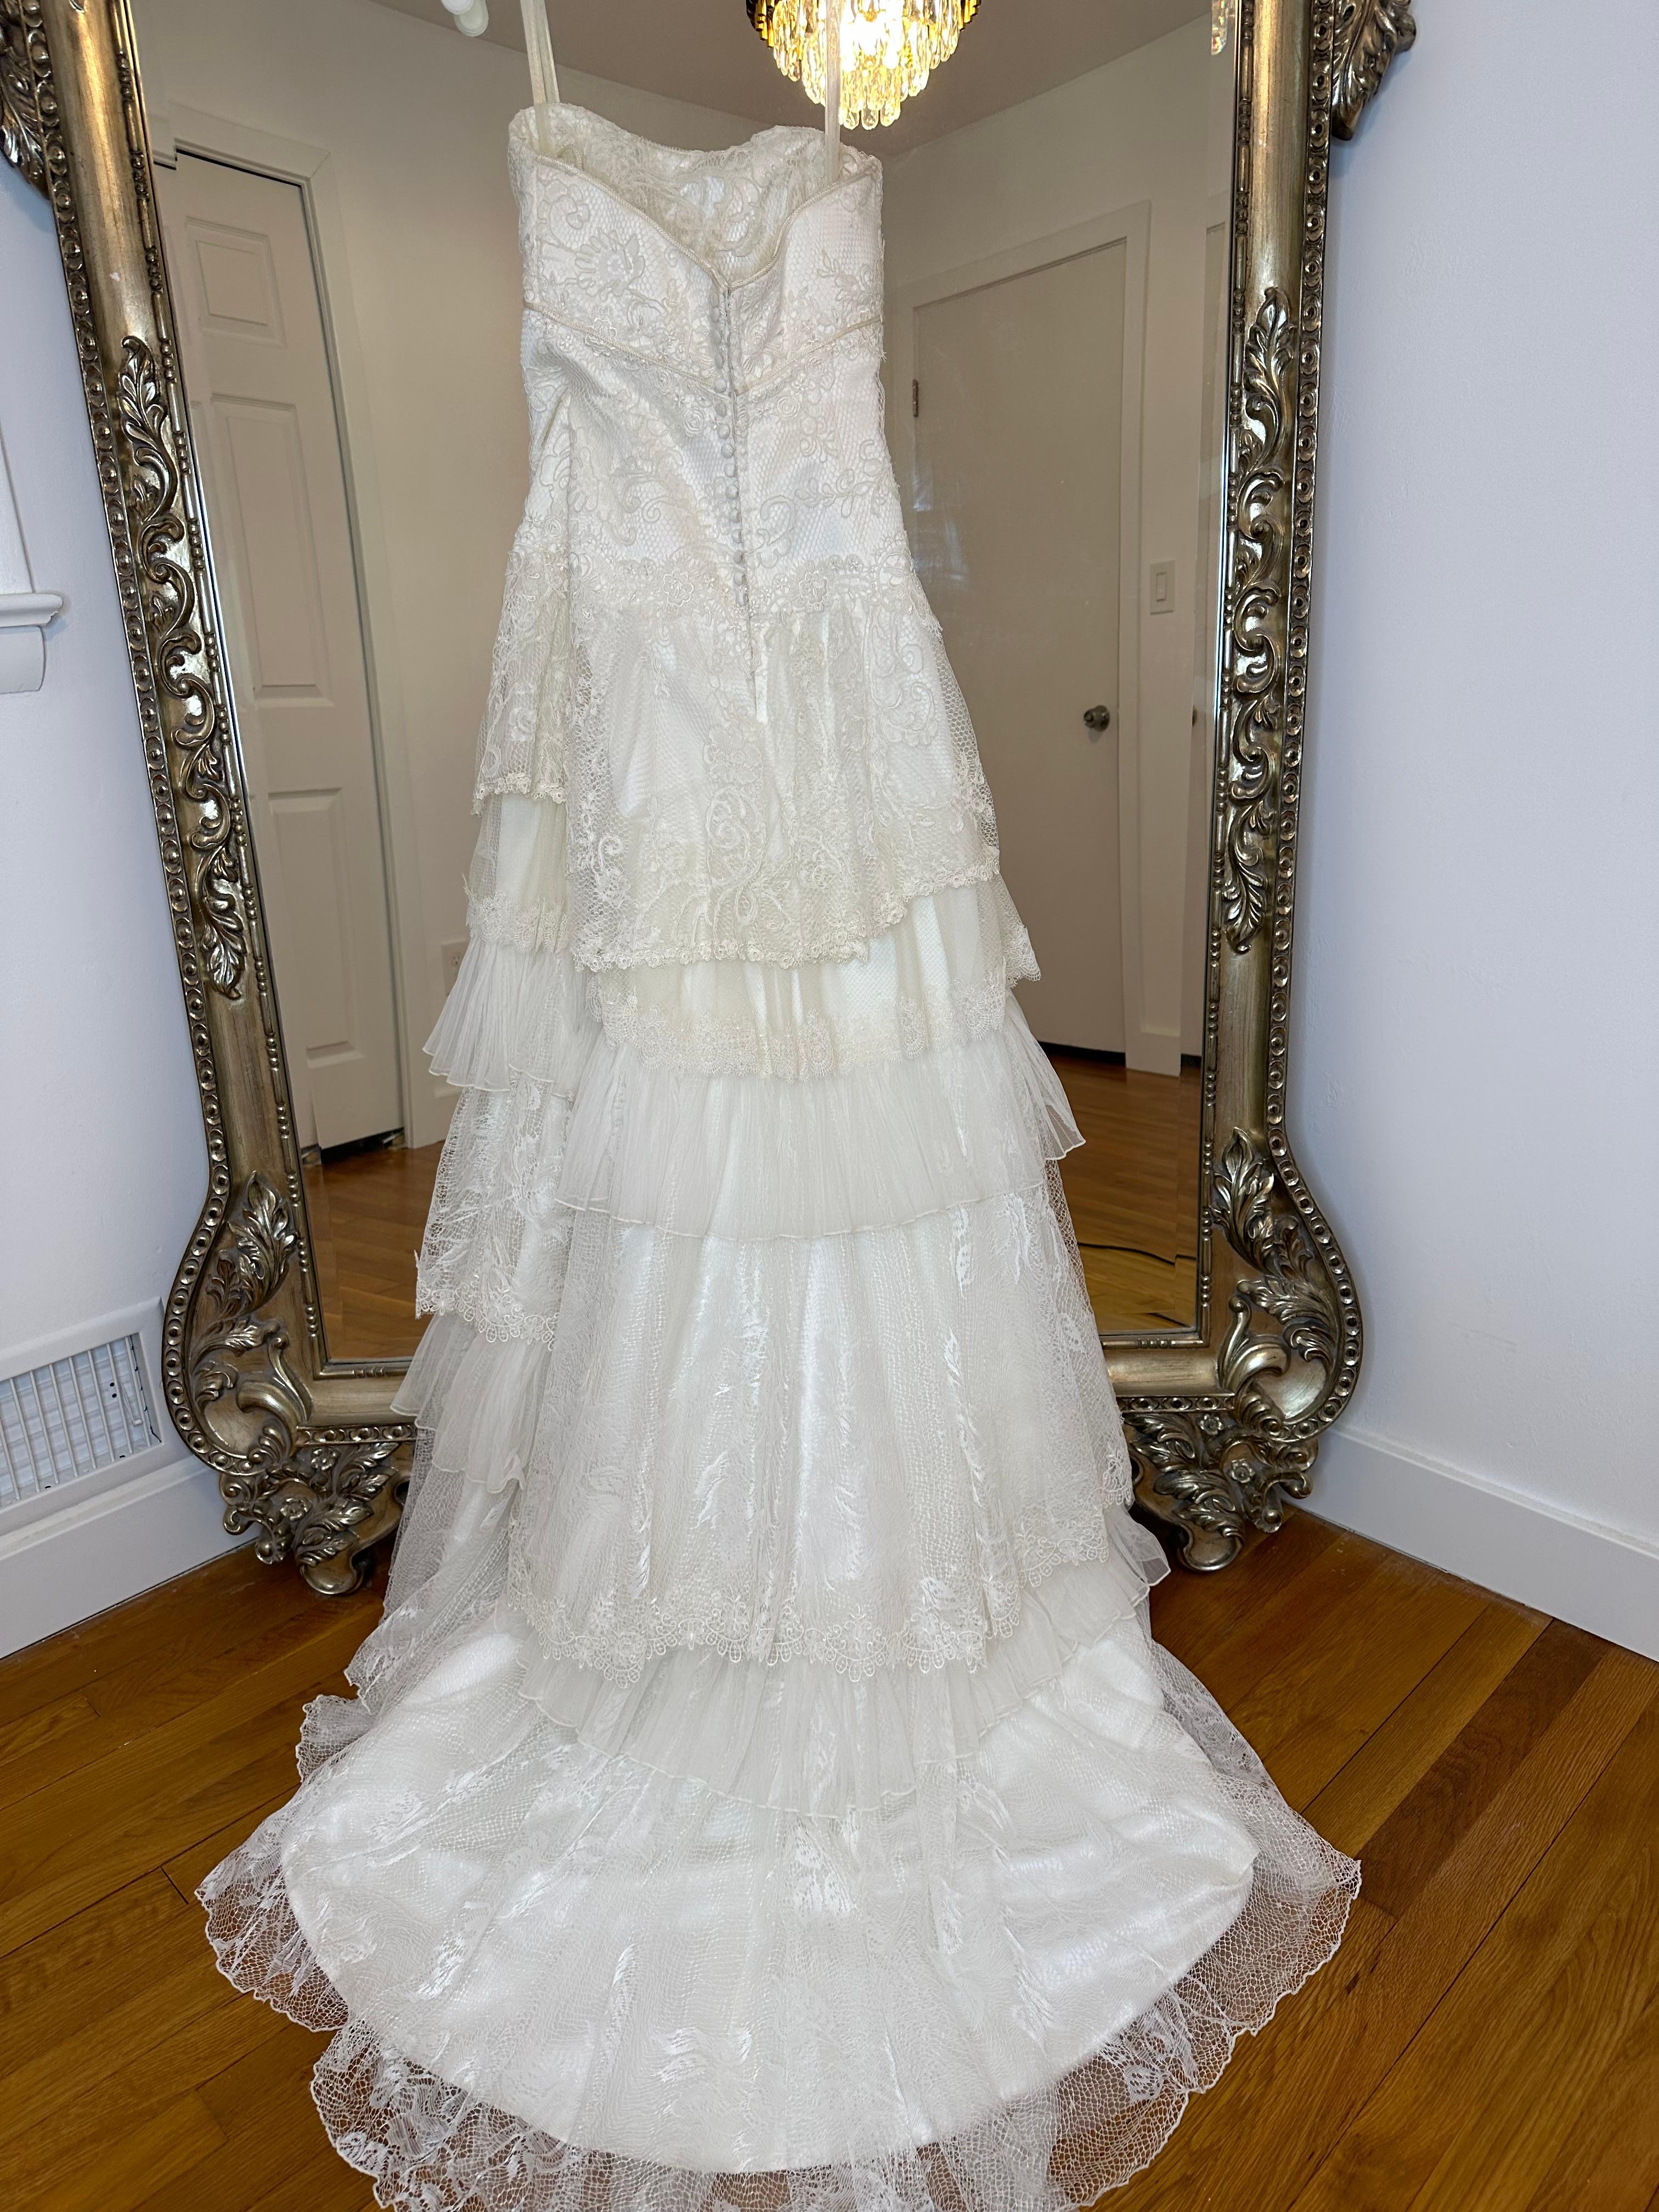 Robe de mariée ivoire Vintage Dolce Gabbana 1990's

Vente de ma robe de mariée. Il est absolument magnifique. J'ai passé des mois à chercher une robe et celle-ci a été de loin la gagnante. Je déménage à l'étranger et c'est la raison pour laquelle